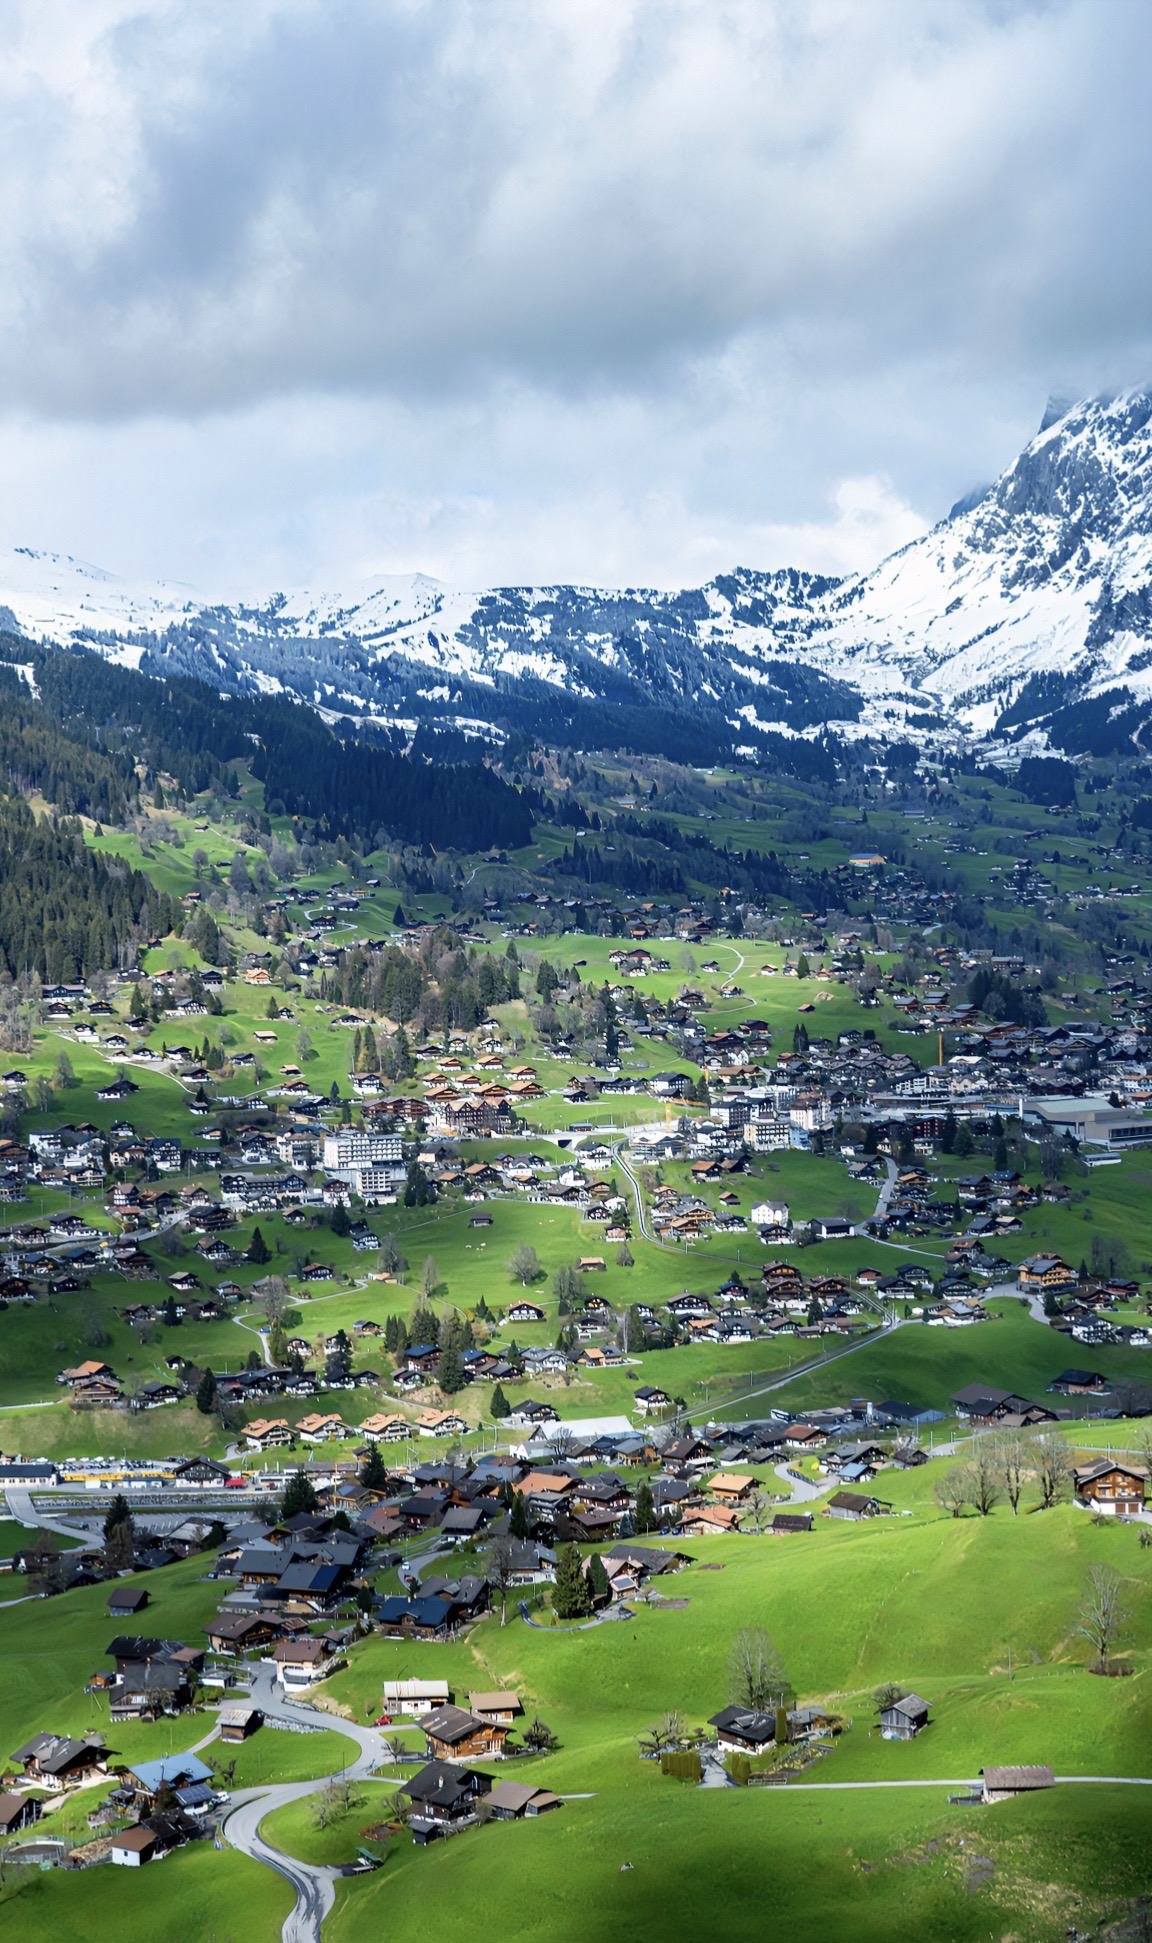 遇见治愈系风景 在瑞士雪山脚下悠然漫步